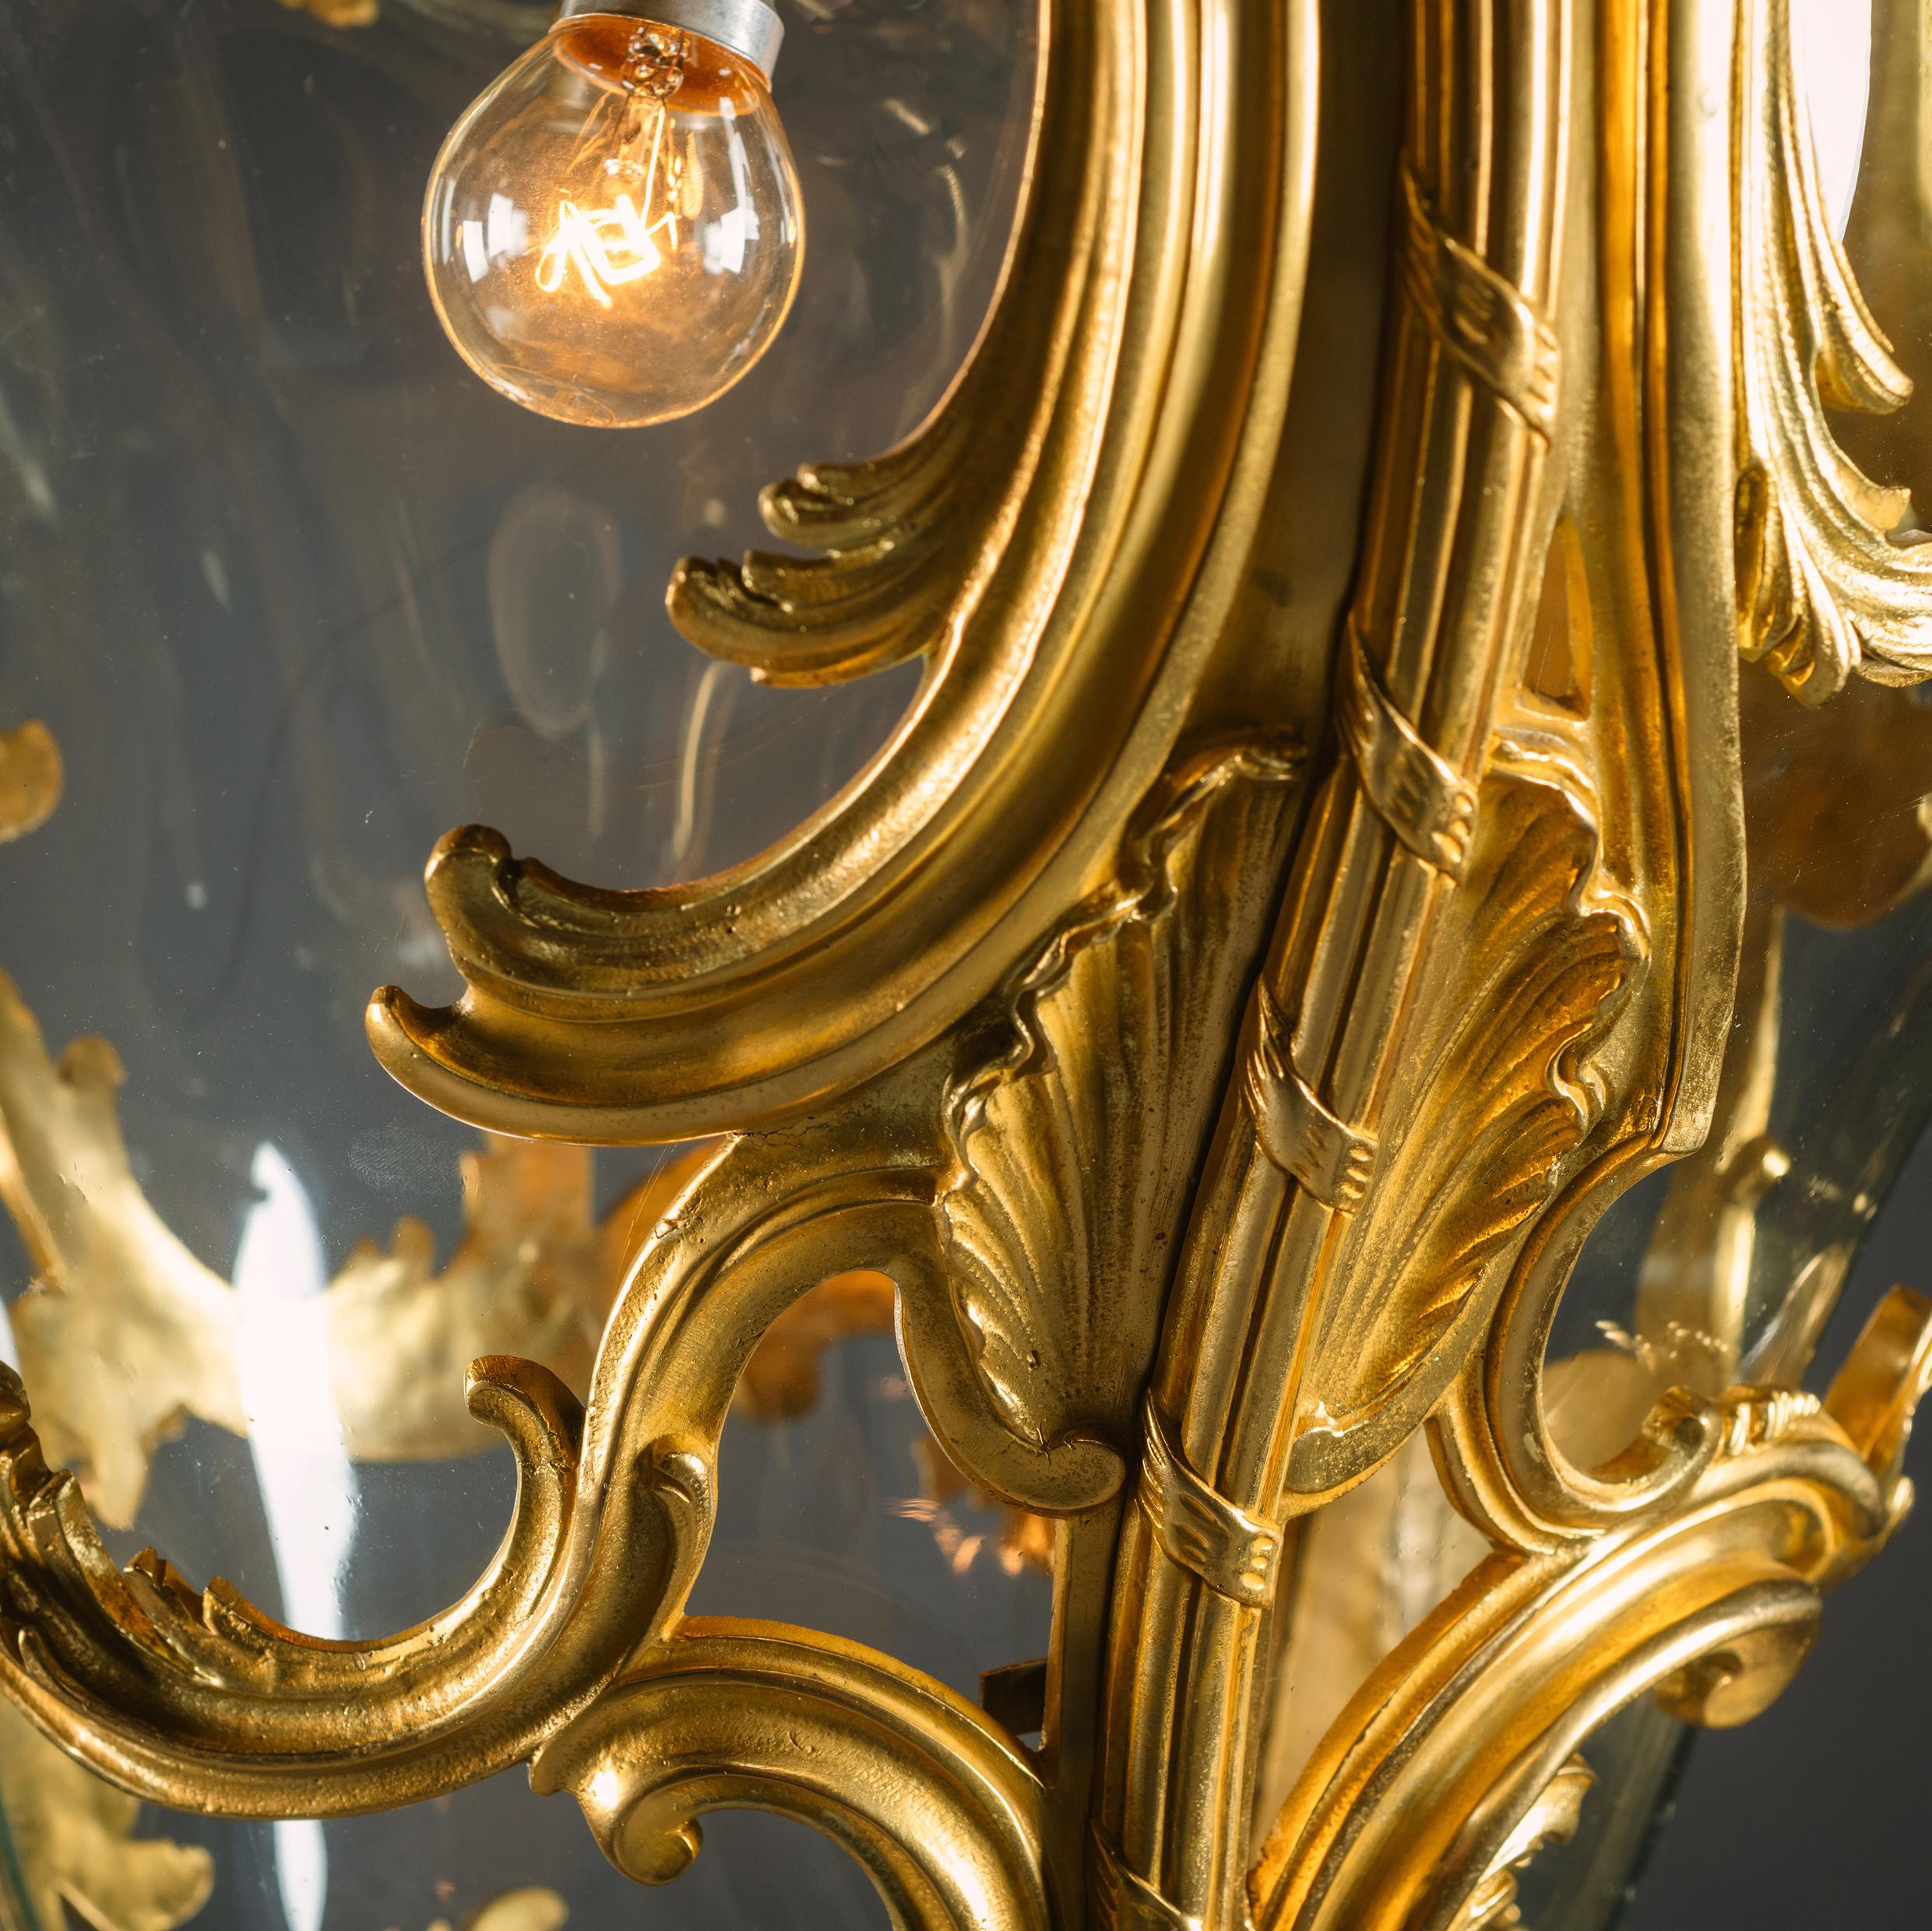 Eine große vergoldete Bronze-Hallenlaterne im Rokoko-Stil.

Diese großartige, palastartige Laterne ist fein aus vergoldeter Bronze gegossen. Sie ist mit asymmetrischen C-Rollen, geschwungenen Akanthusblättern und durchbrochenen Rocaille-Ornamenten